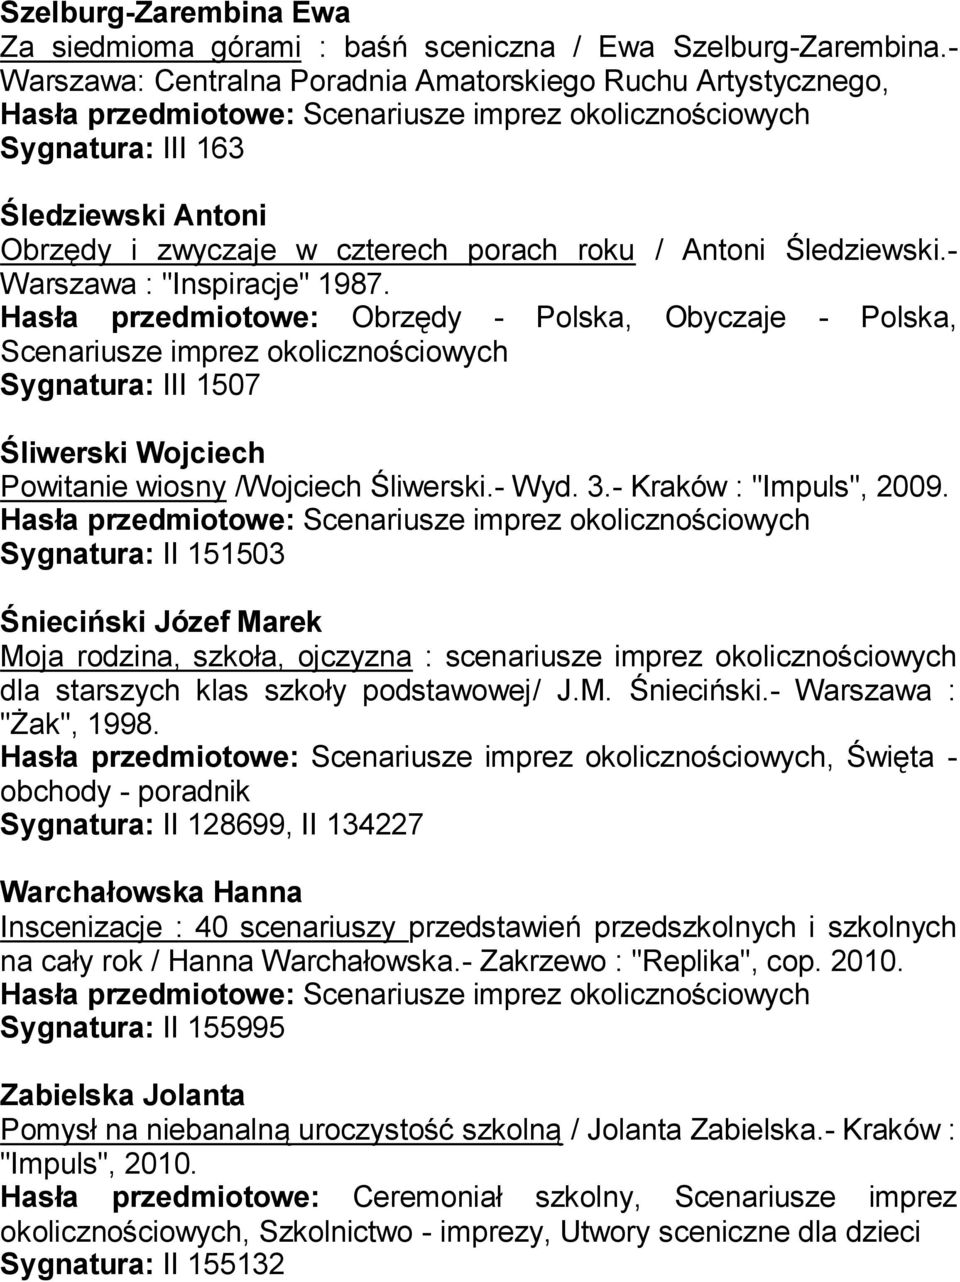 Hasła przedmiotowe: Obrzędy - Polska, Obyczaje - Polska, Sygnatura: III 1507 Śliwerski Wojciech Powitanie wiosny /Wojciech Śliwerski.- Wyd. 3.- Kraków : "Impuls", 2009.